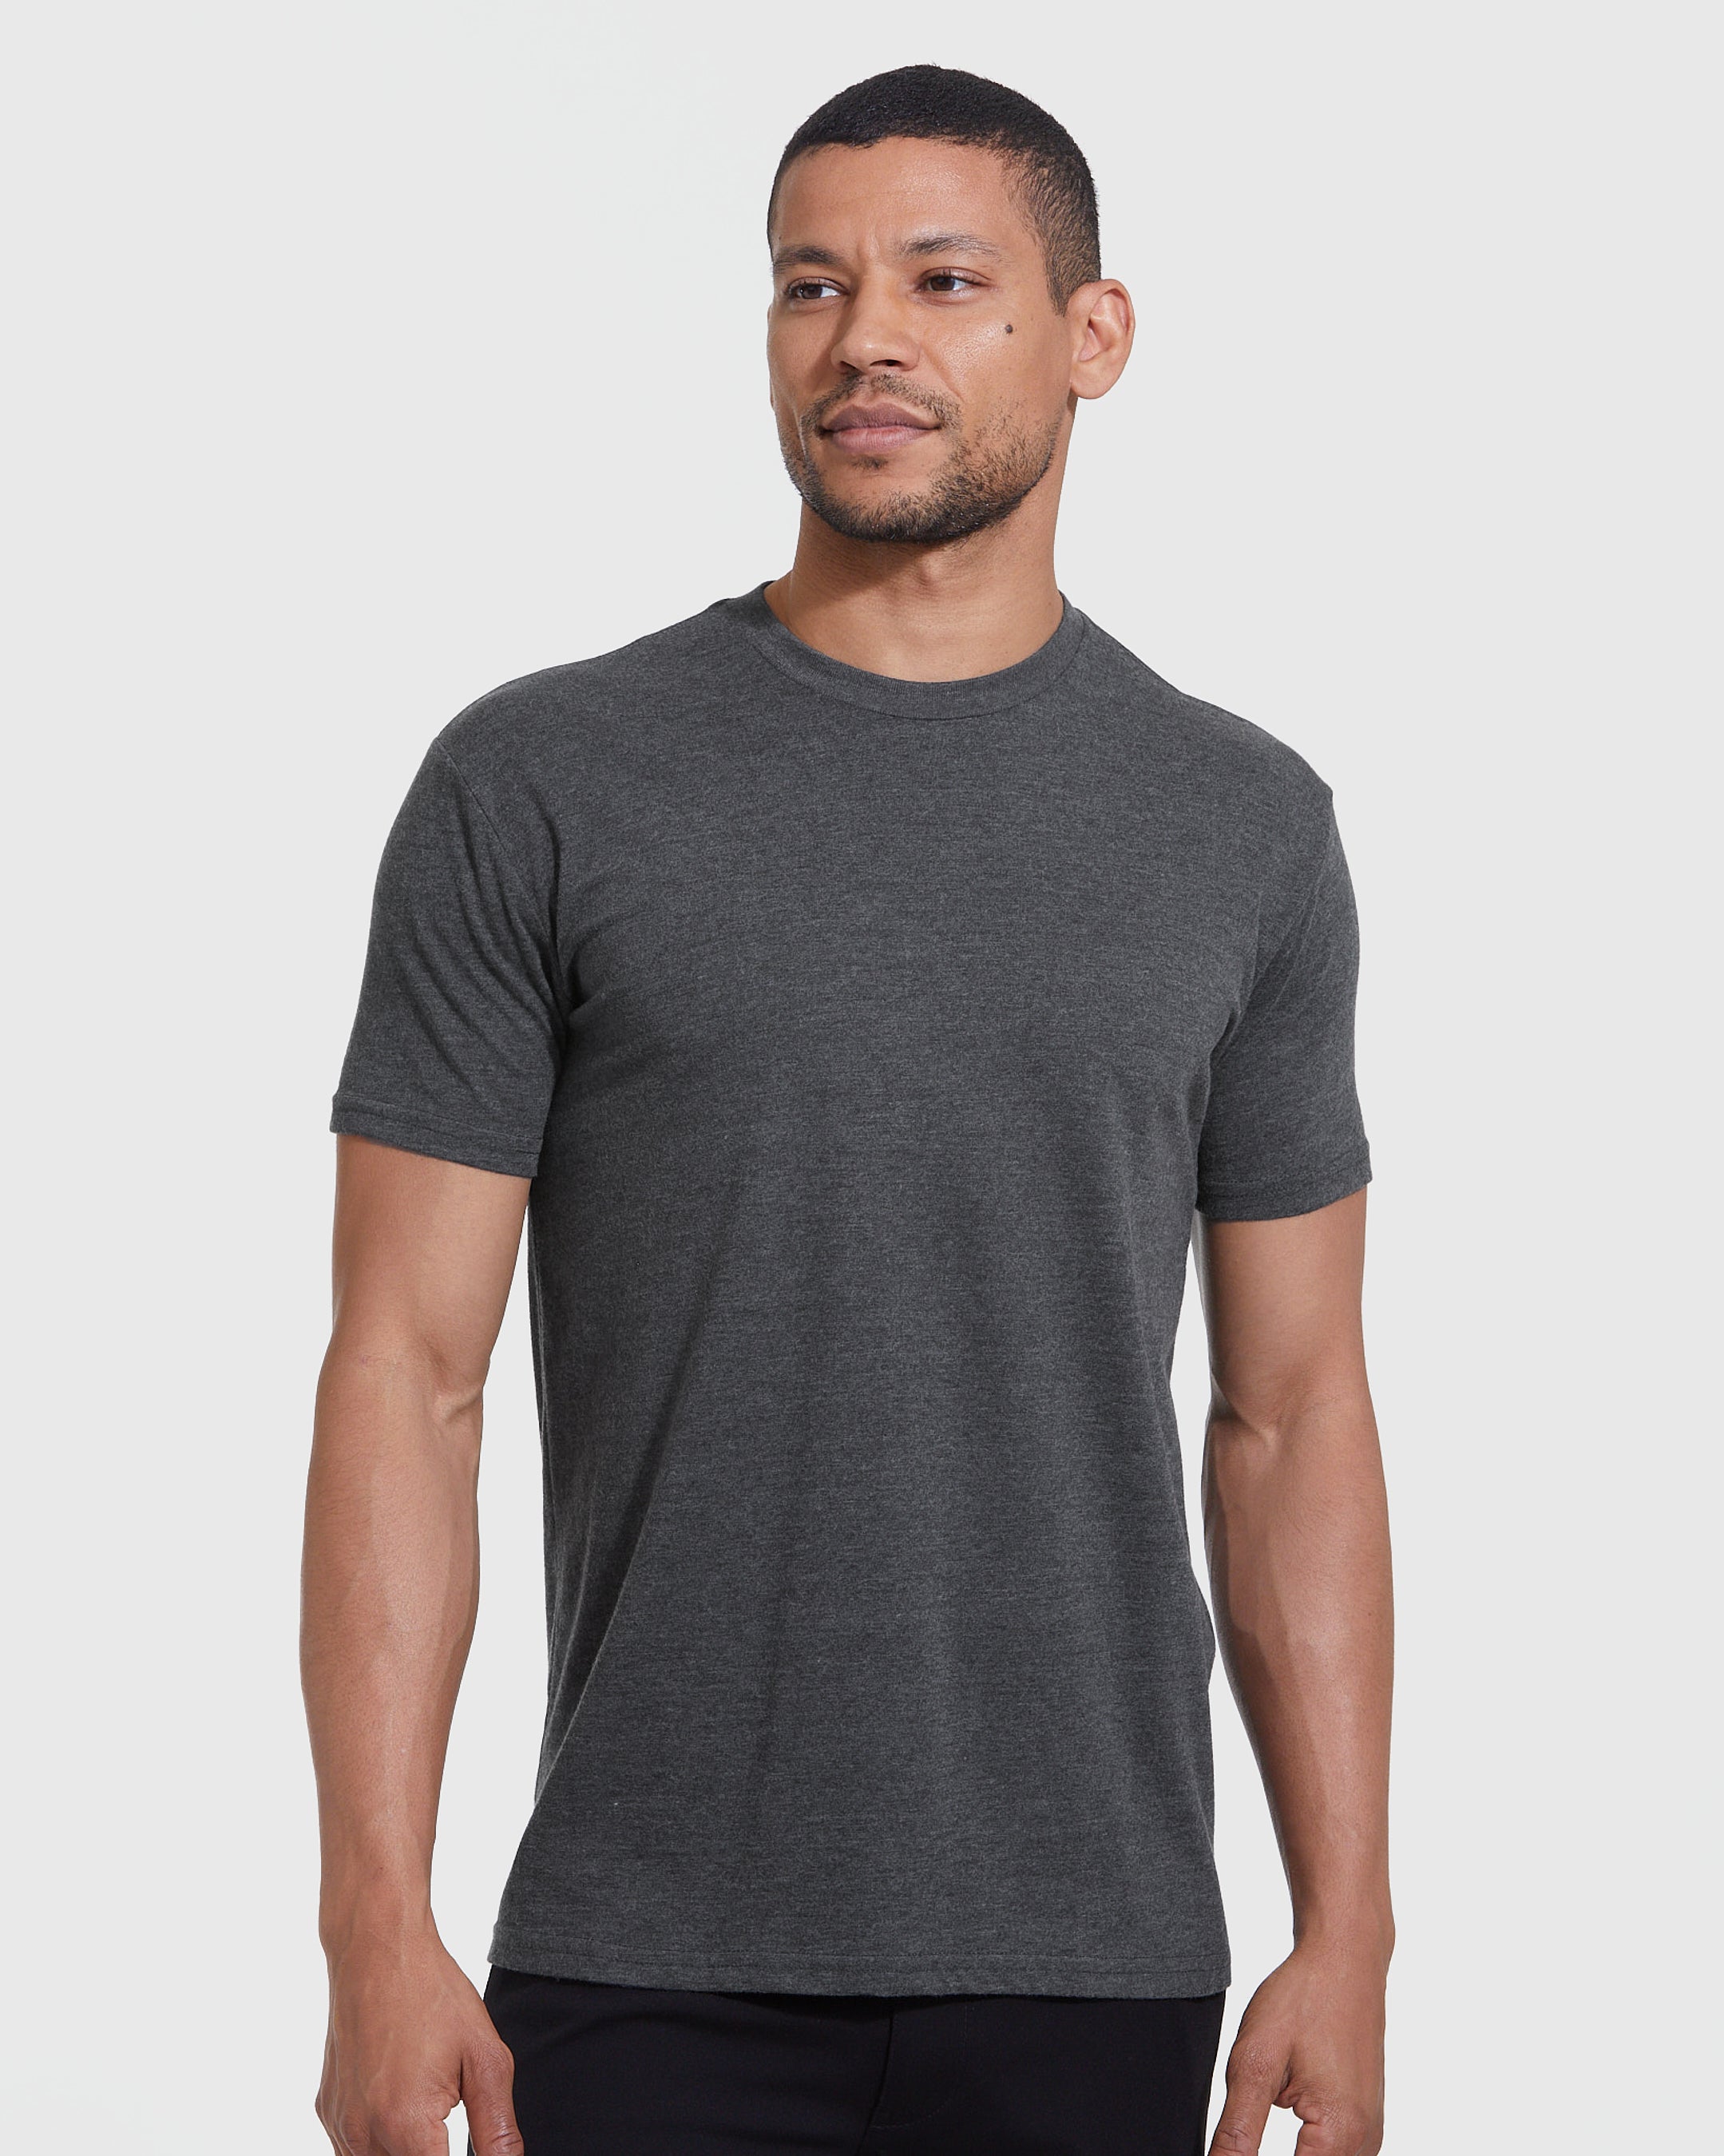 Lucky Brand True Indigo T-Shirt Men's XL Gray Short Sleeve Crew